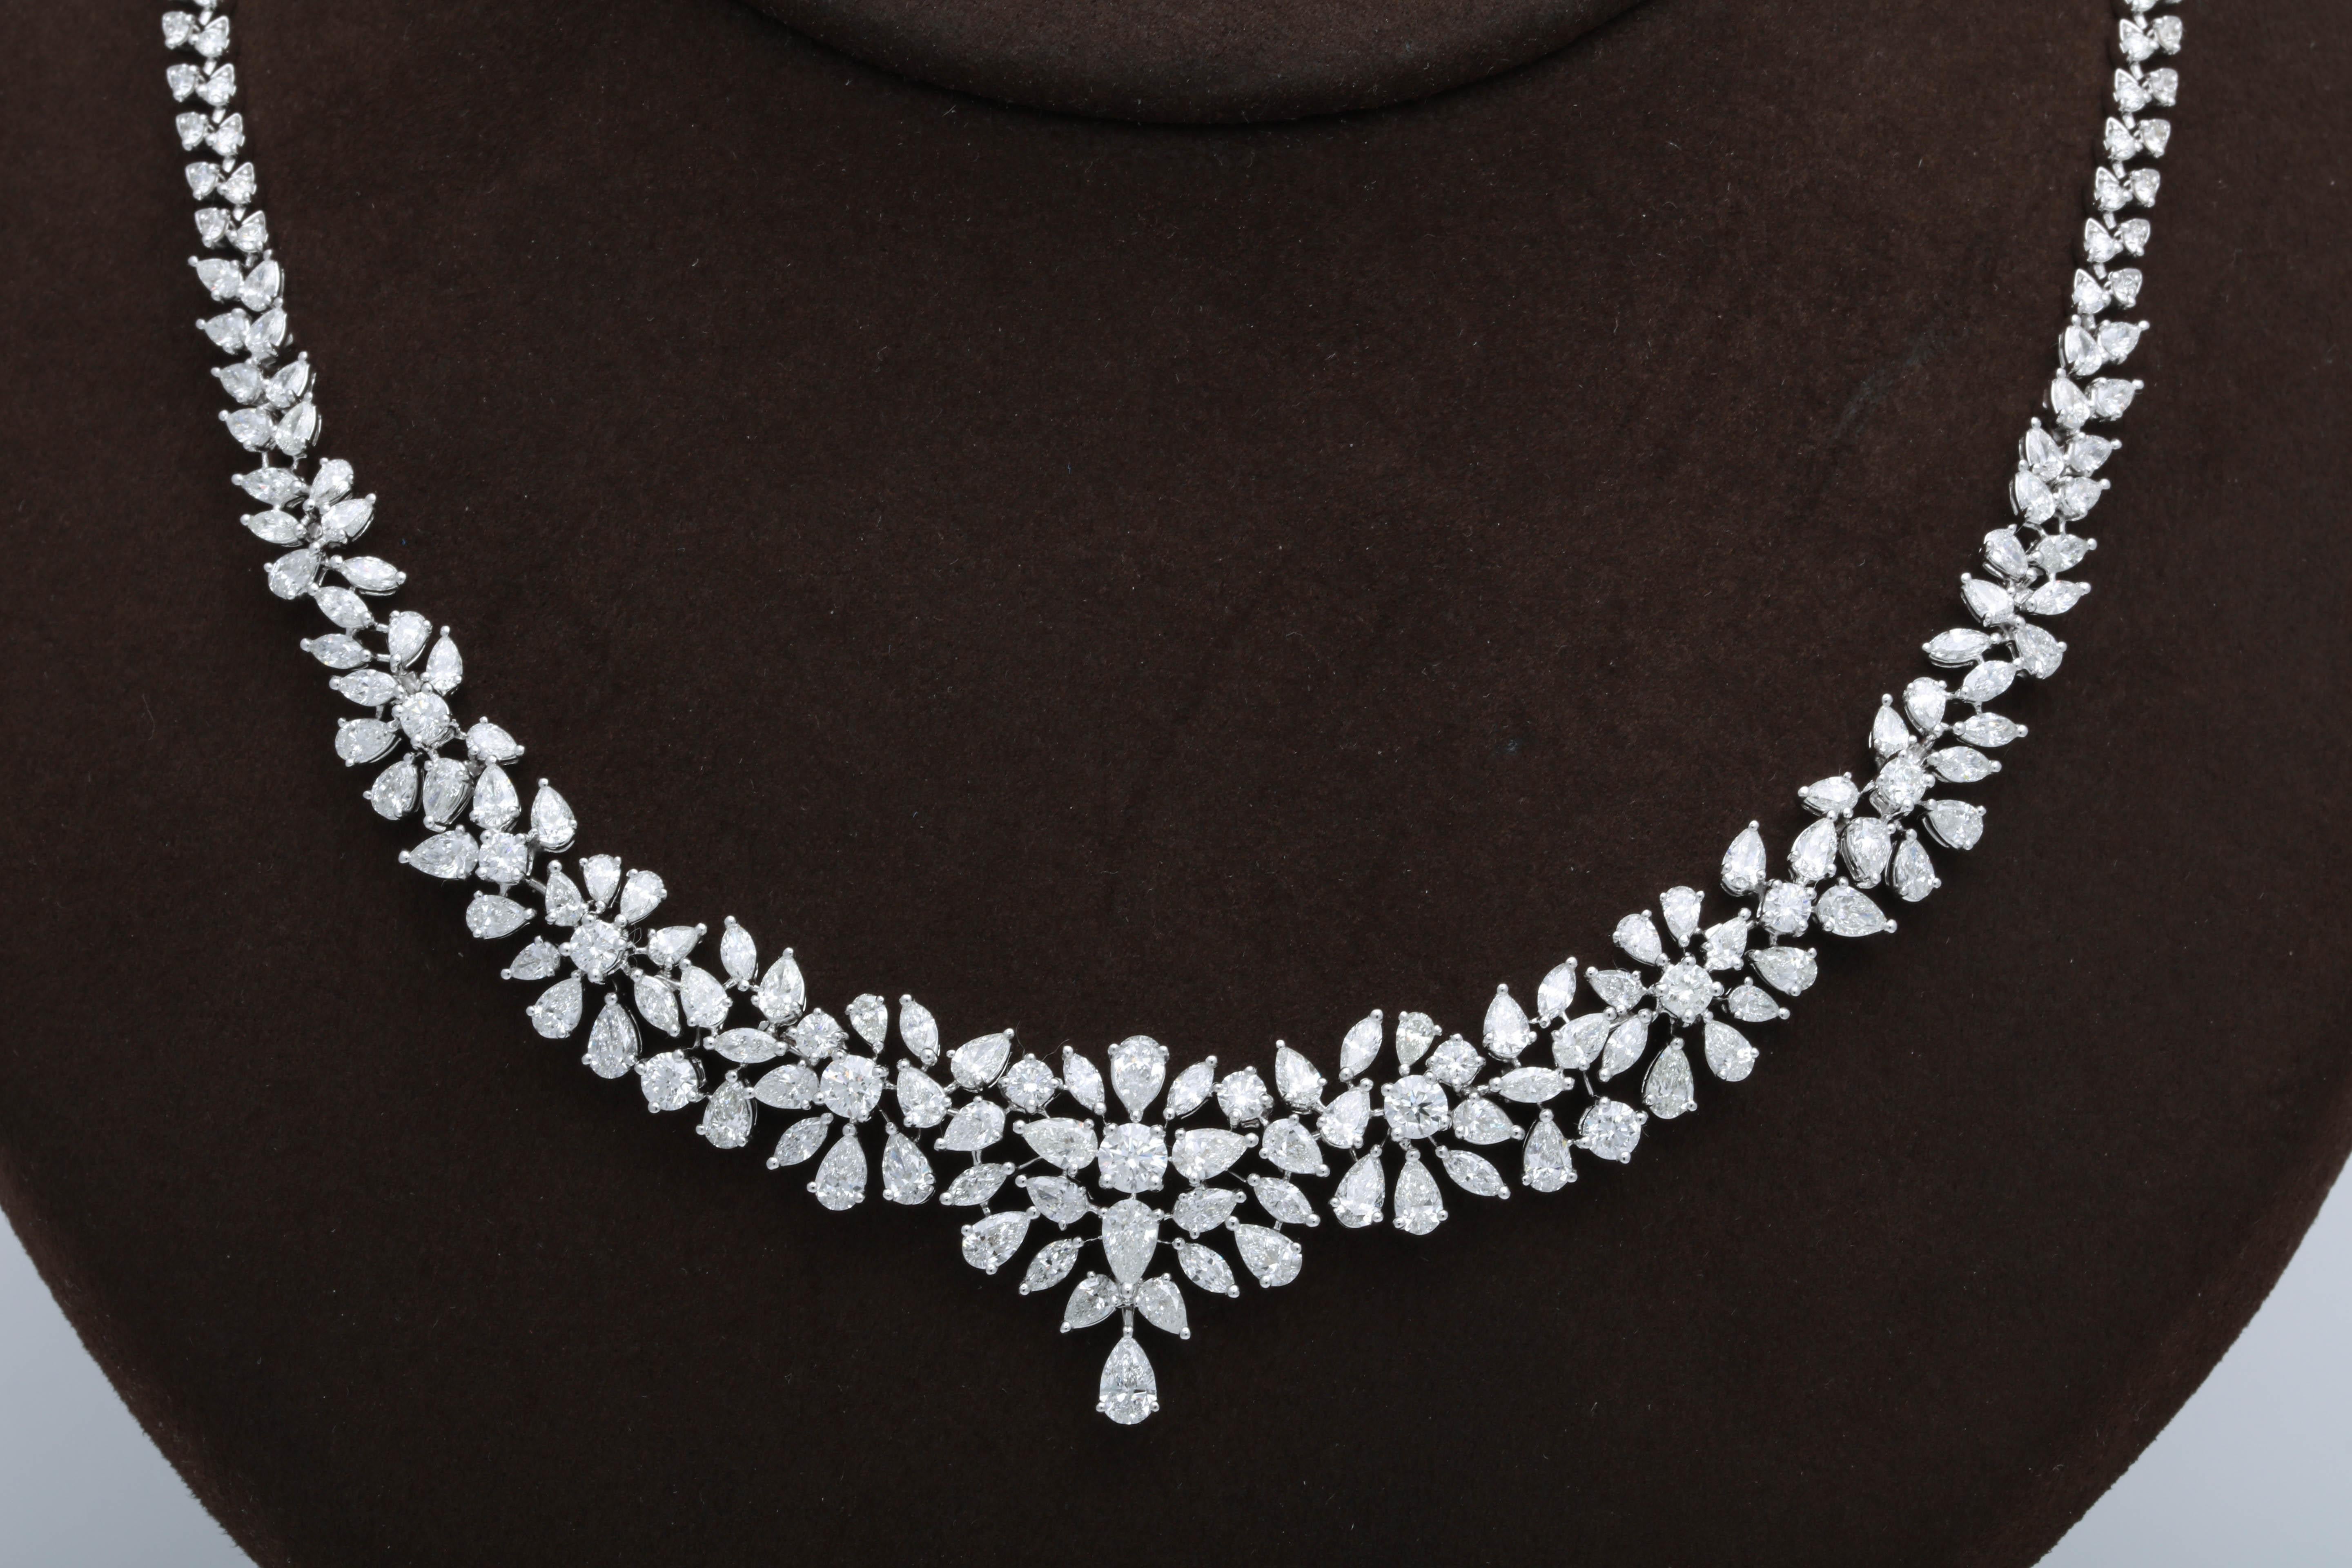 multi shape diamond necklace